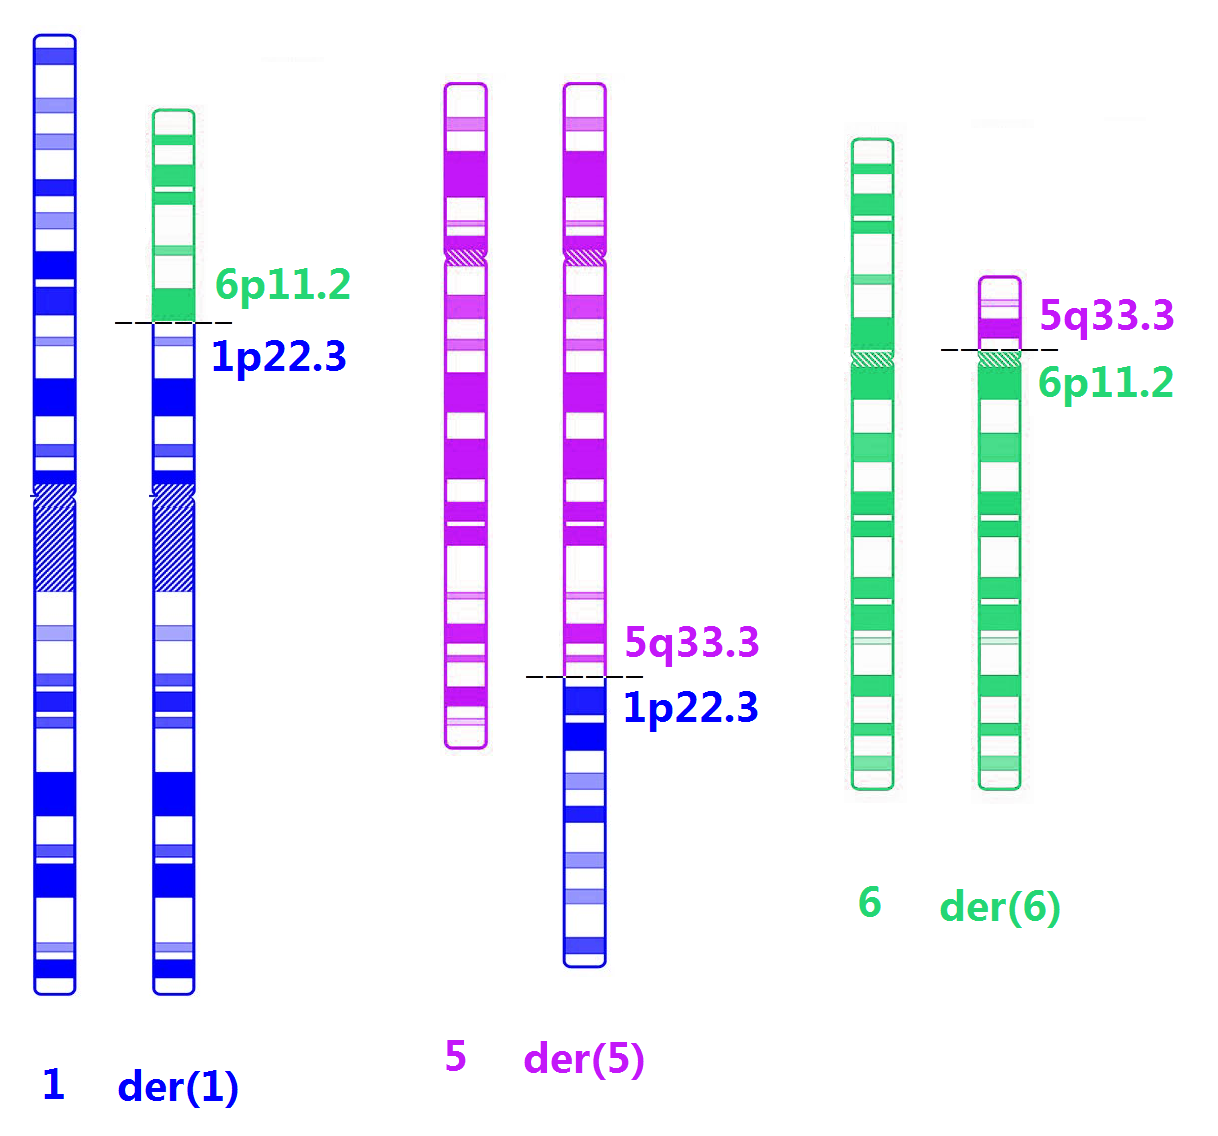 染色体结构畸变简式图片